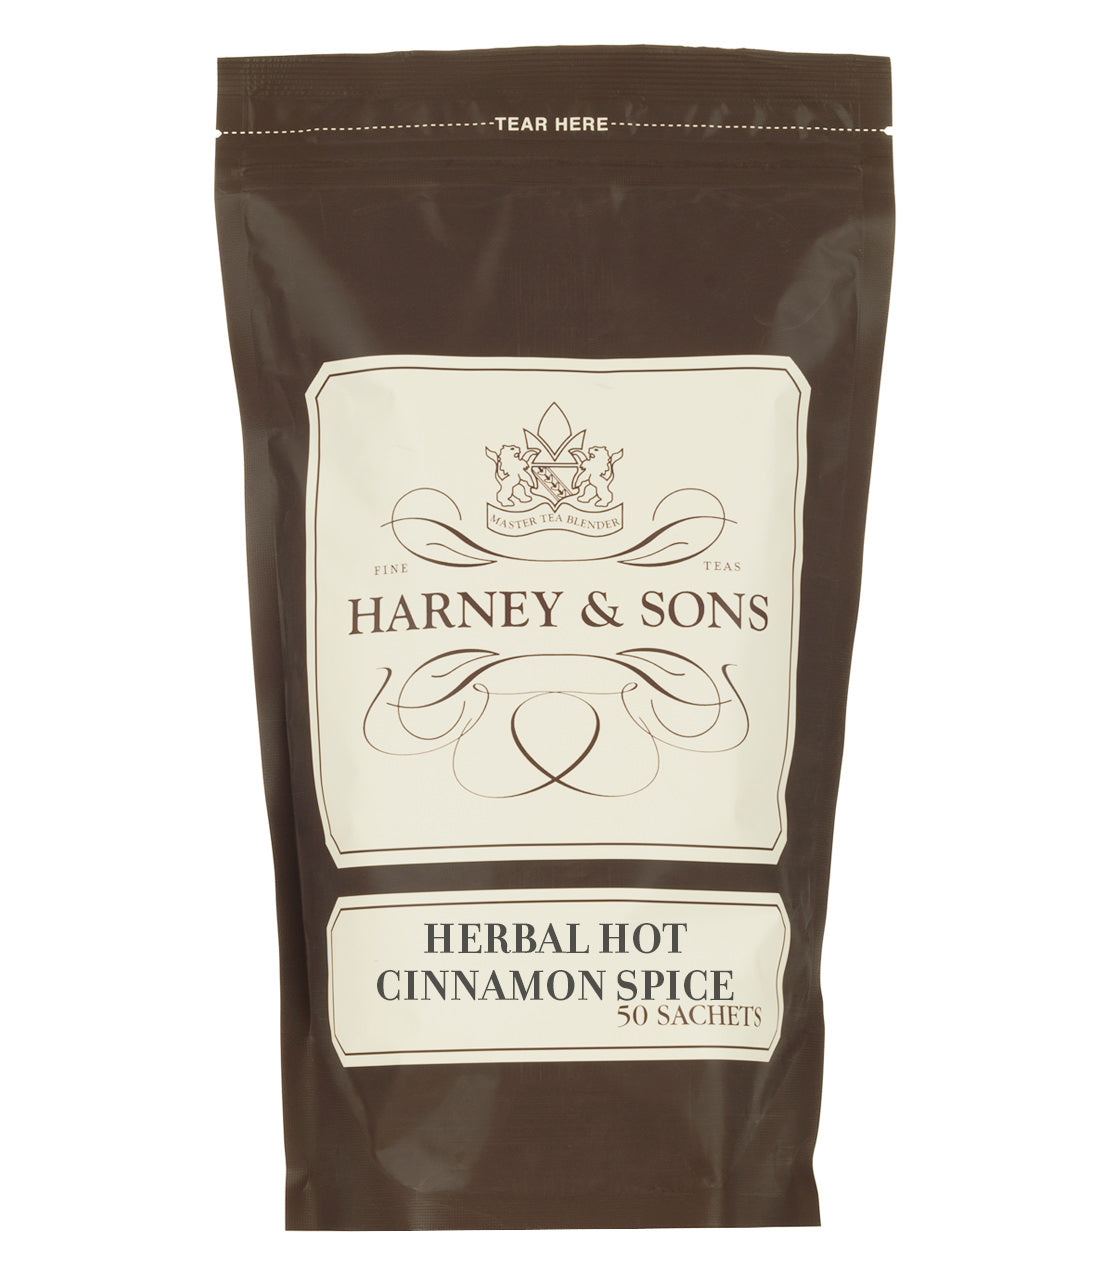 Herbal Hot Cinnamon Spice - Sachets Bag of 50 Sachets - Harney & Sons Fine Teas